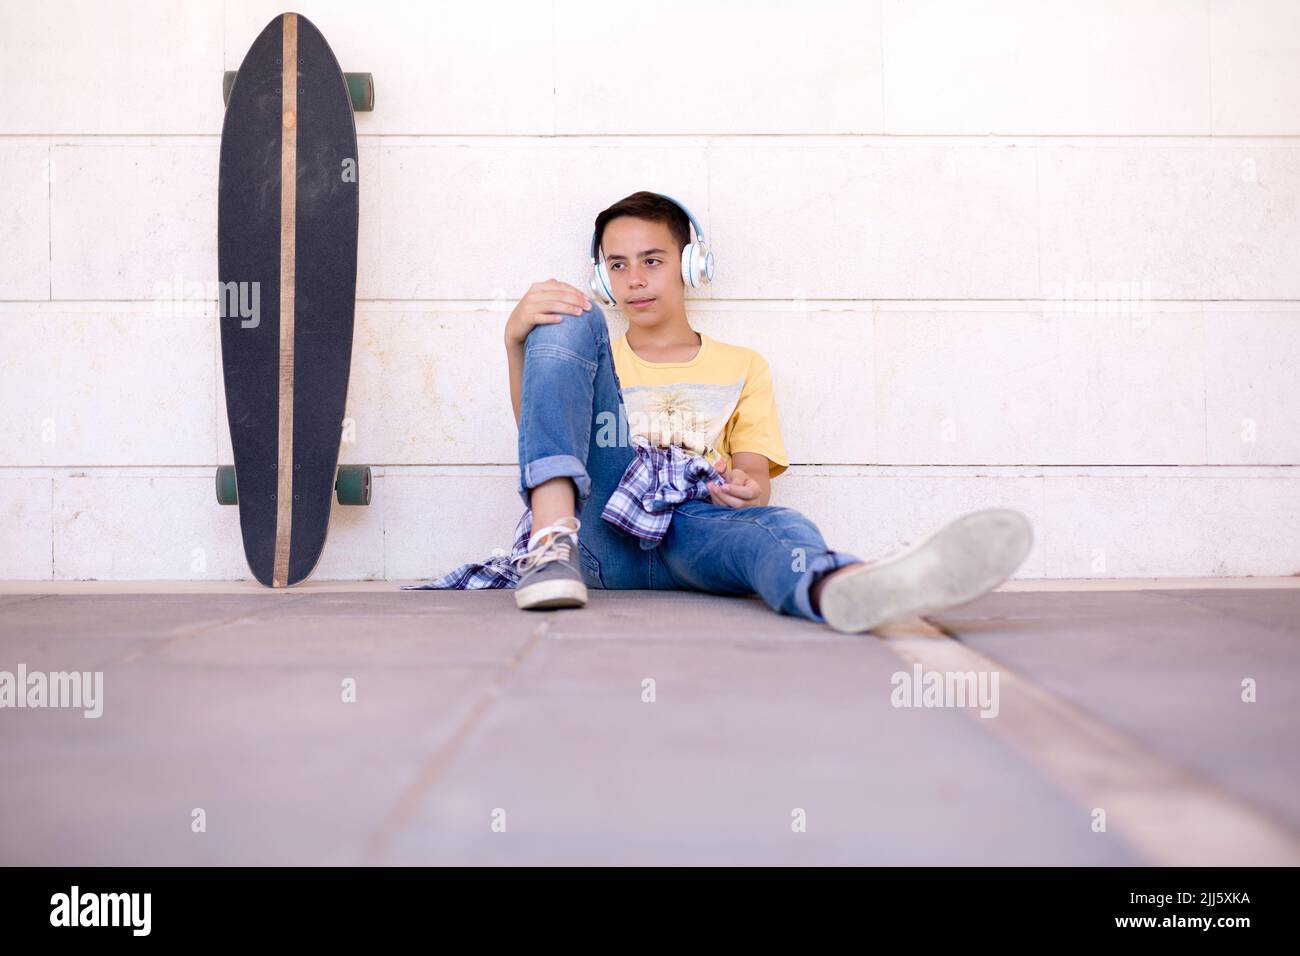 Un garçon caucasien écoute de la musique. Un skateboarder adolescent assis sur le sol. Banque D'Images